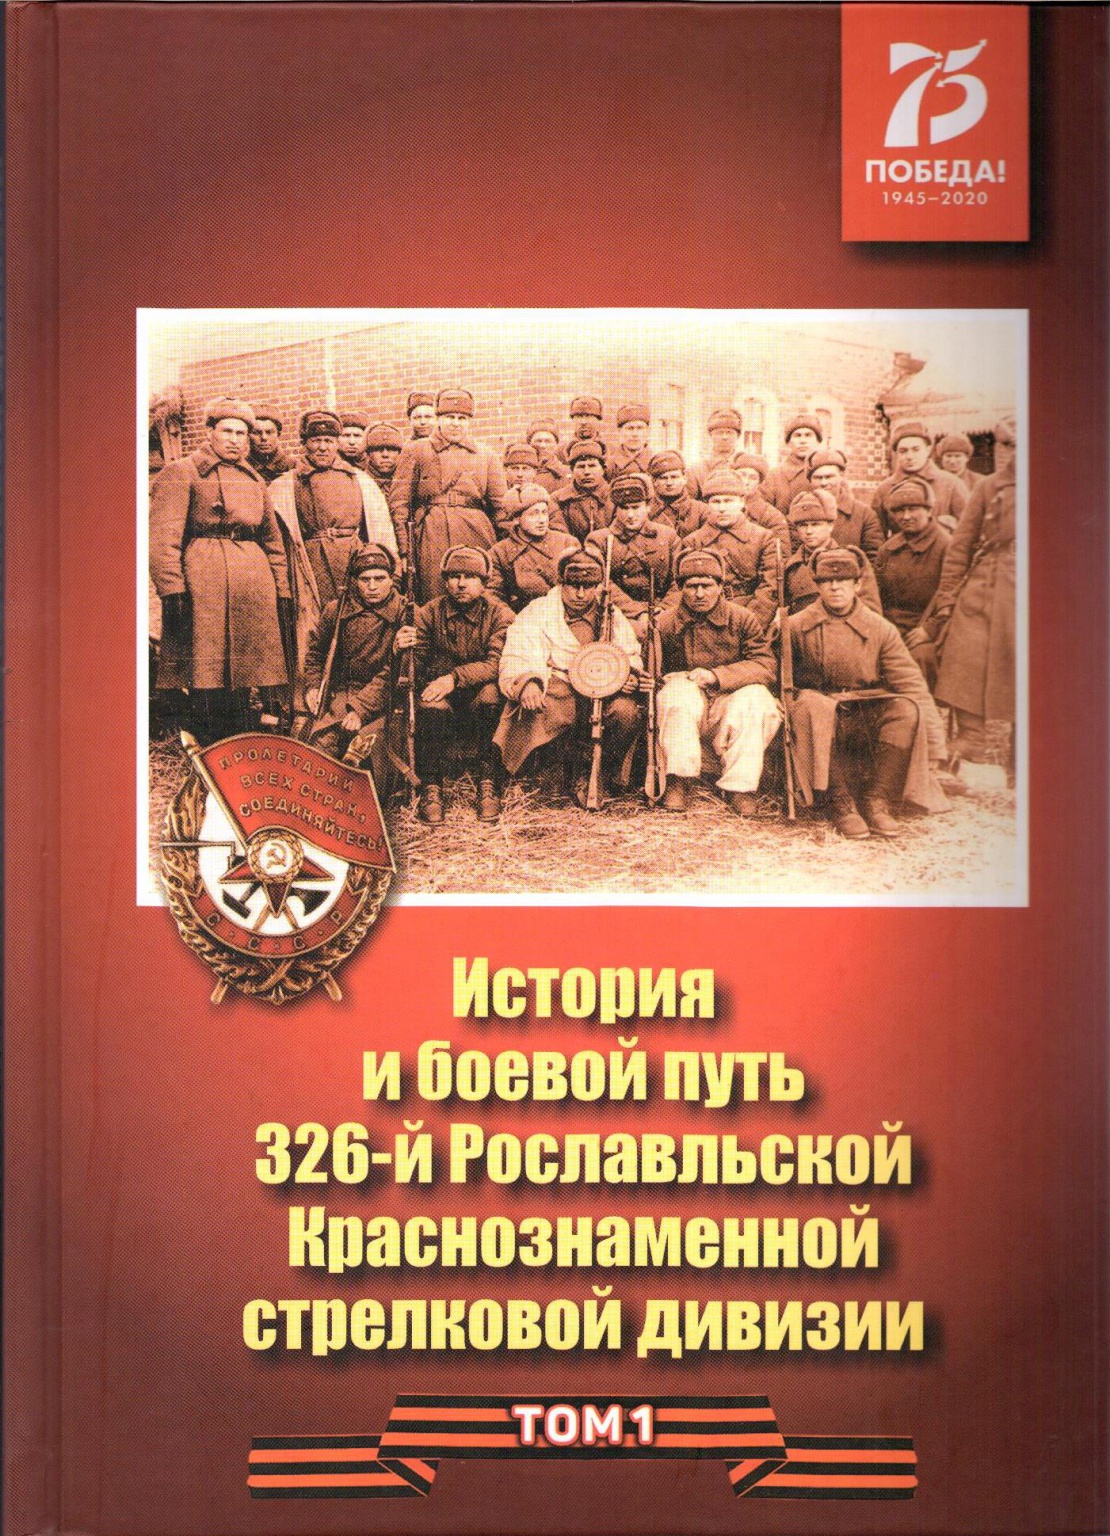 326-Я стрелковая Рославльская Краснознаменная дивизия